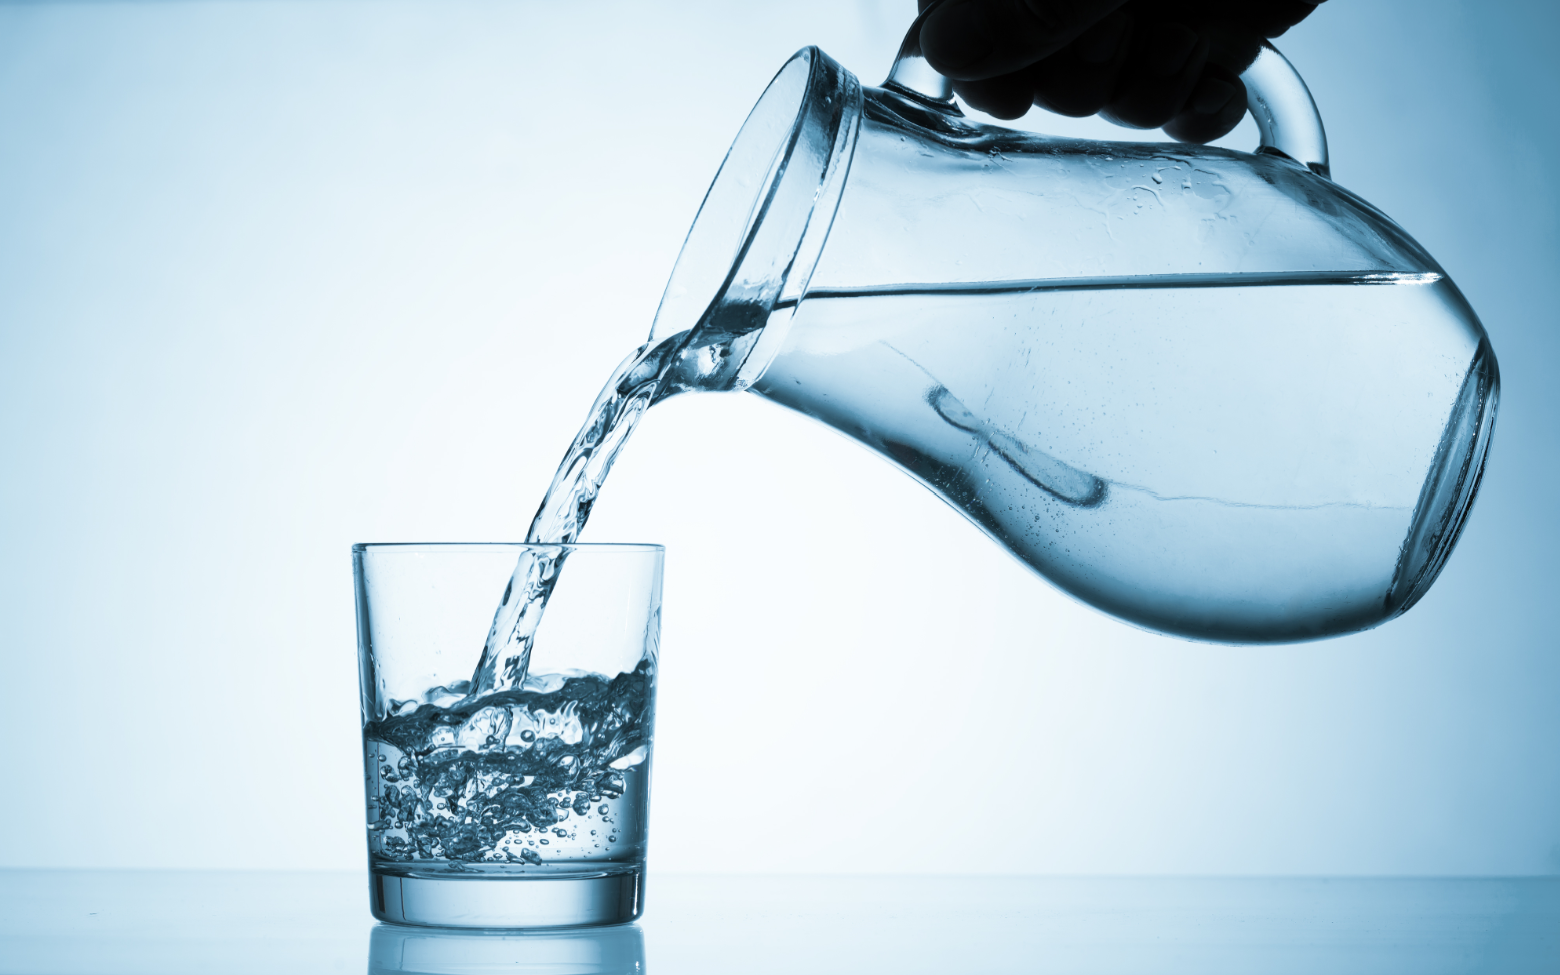 Τι προκαλεί η υπερκατανάλωση νερού στον οργανισμό